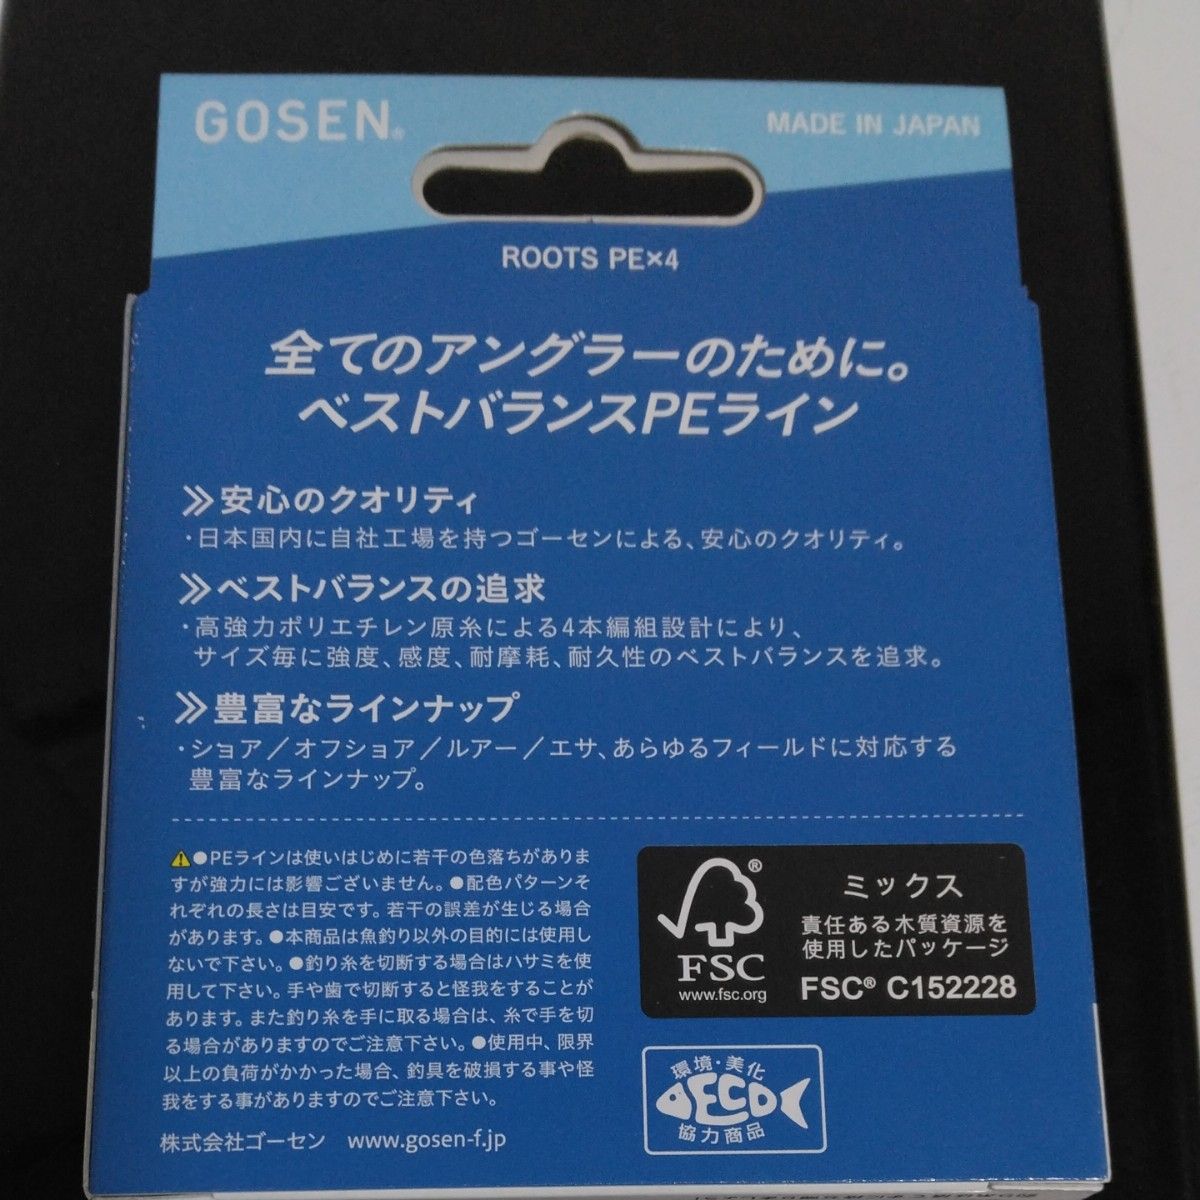 ゴーセン (Gosen) ルーツ PE×4 ライトグリーン 200m 2号